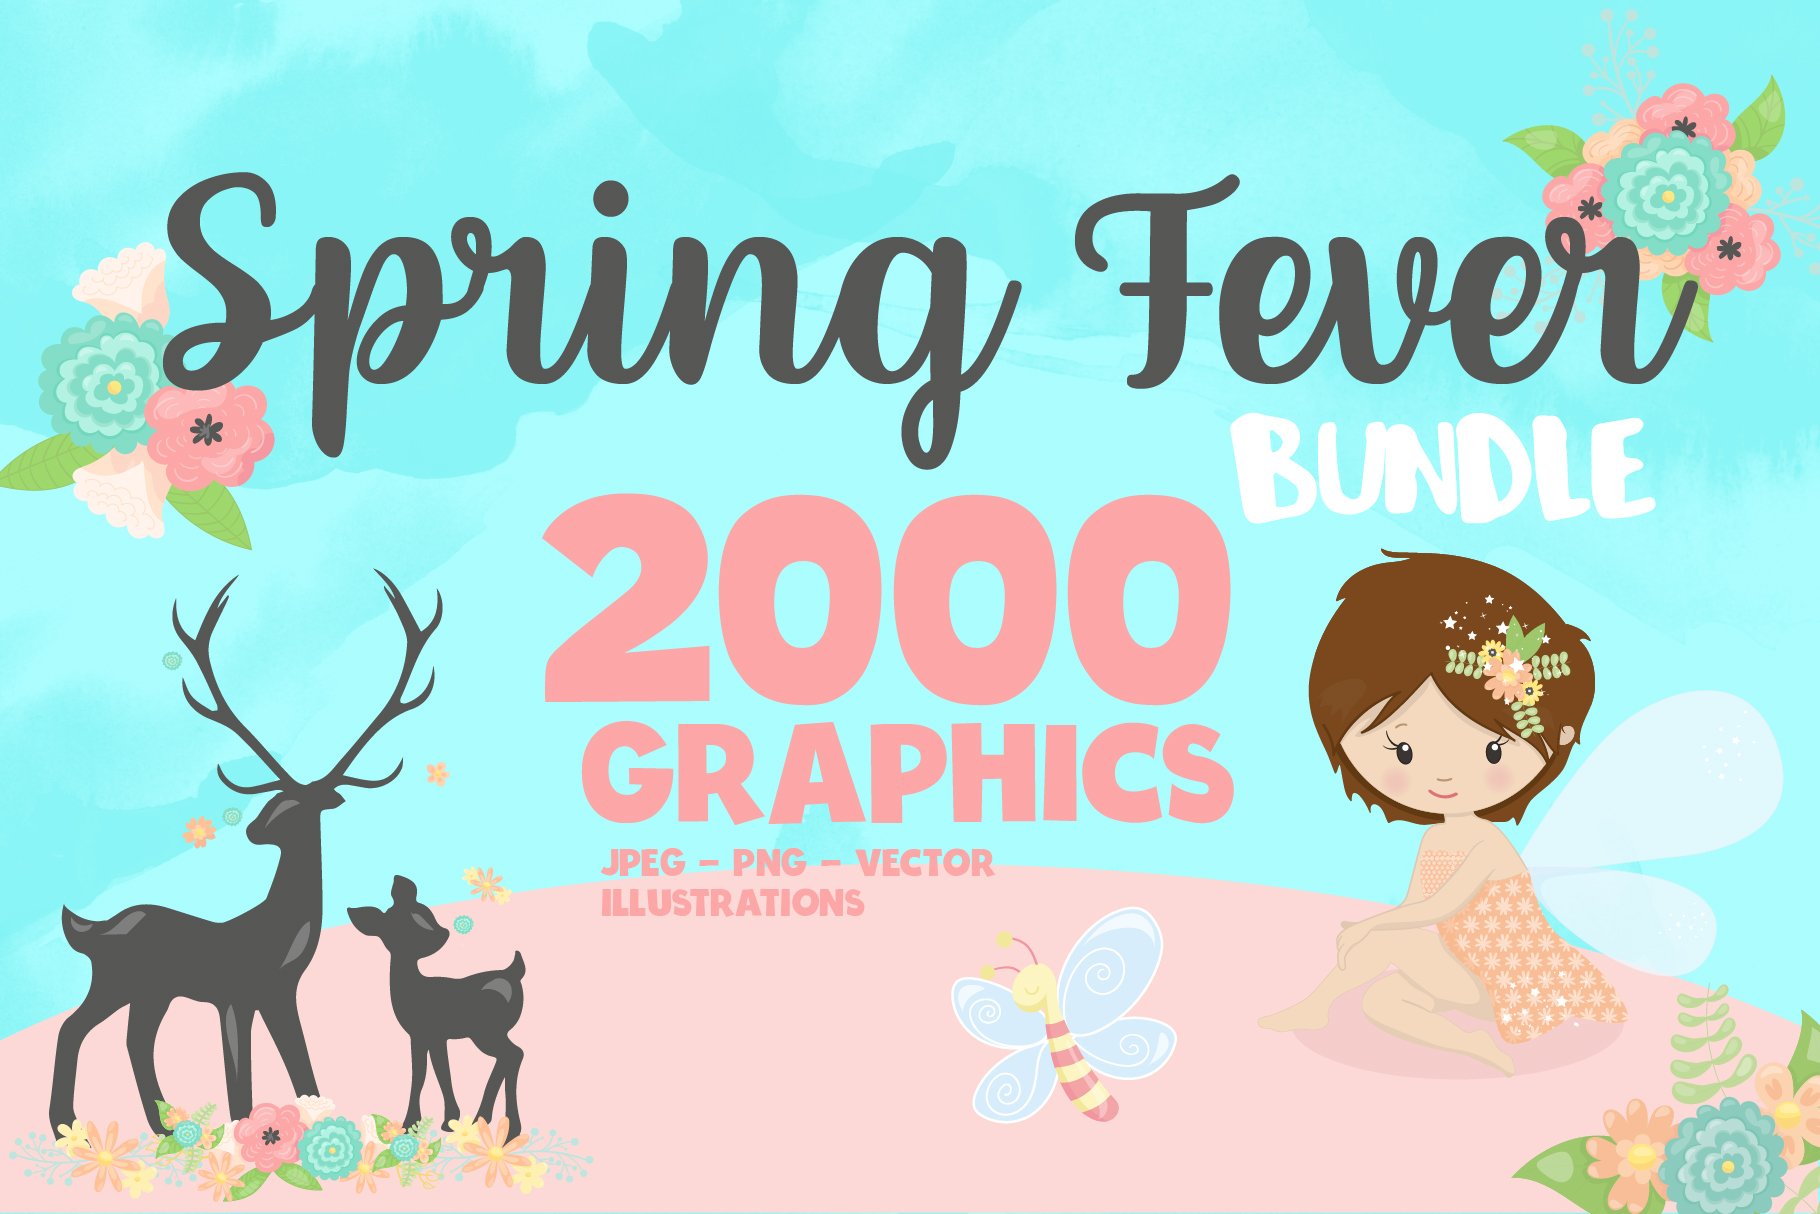 Spring fever bundle 2000 in 1 - Vector Image